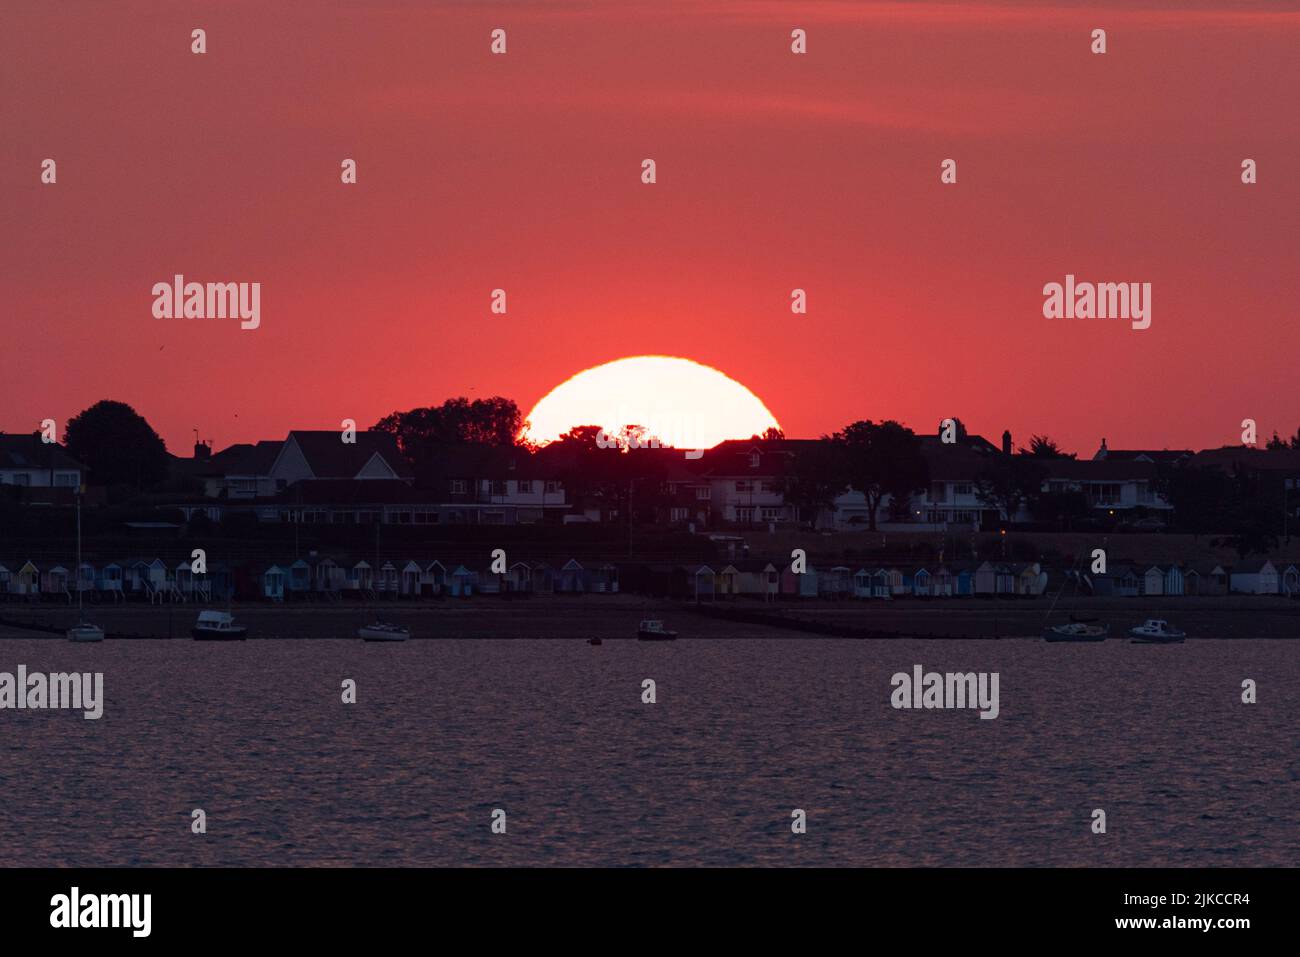 Sonnenaufgang hinter Thorpe Bay, Southend on Sea, Essex, Großbritannien. Strandgrundstücke im Morgengrauen Stockfoto